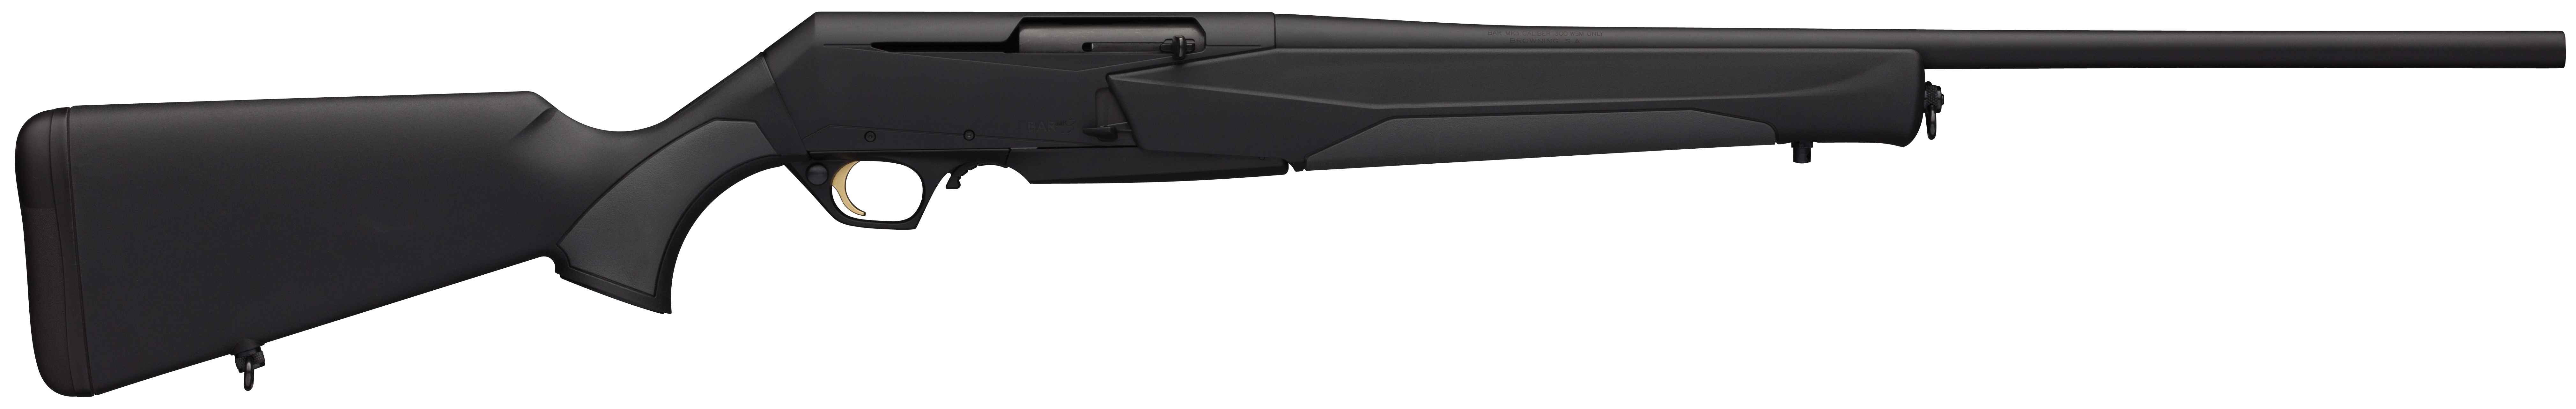 Browning BAR MK 3 Stalker